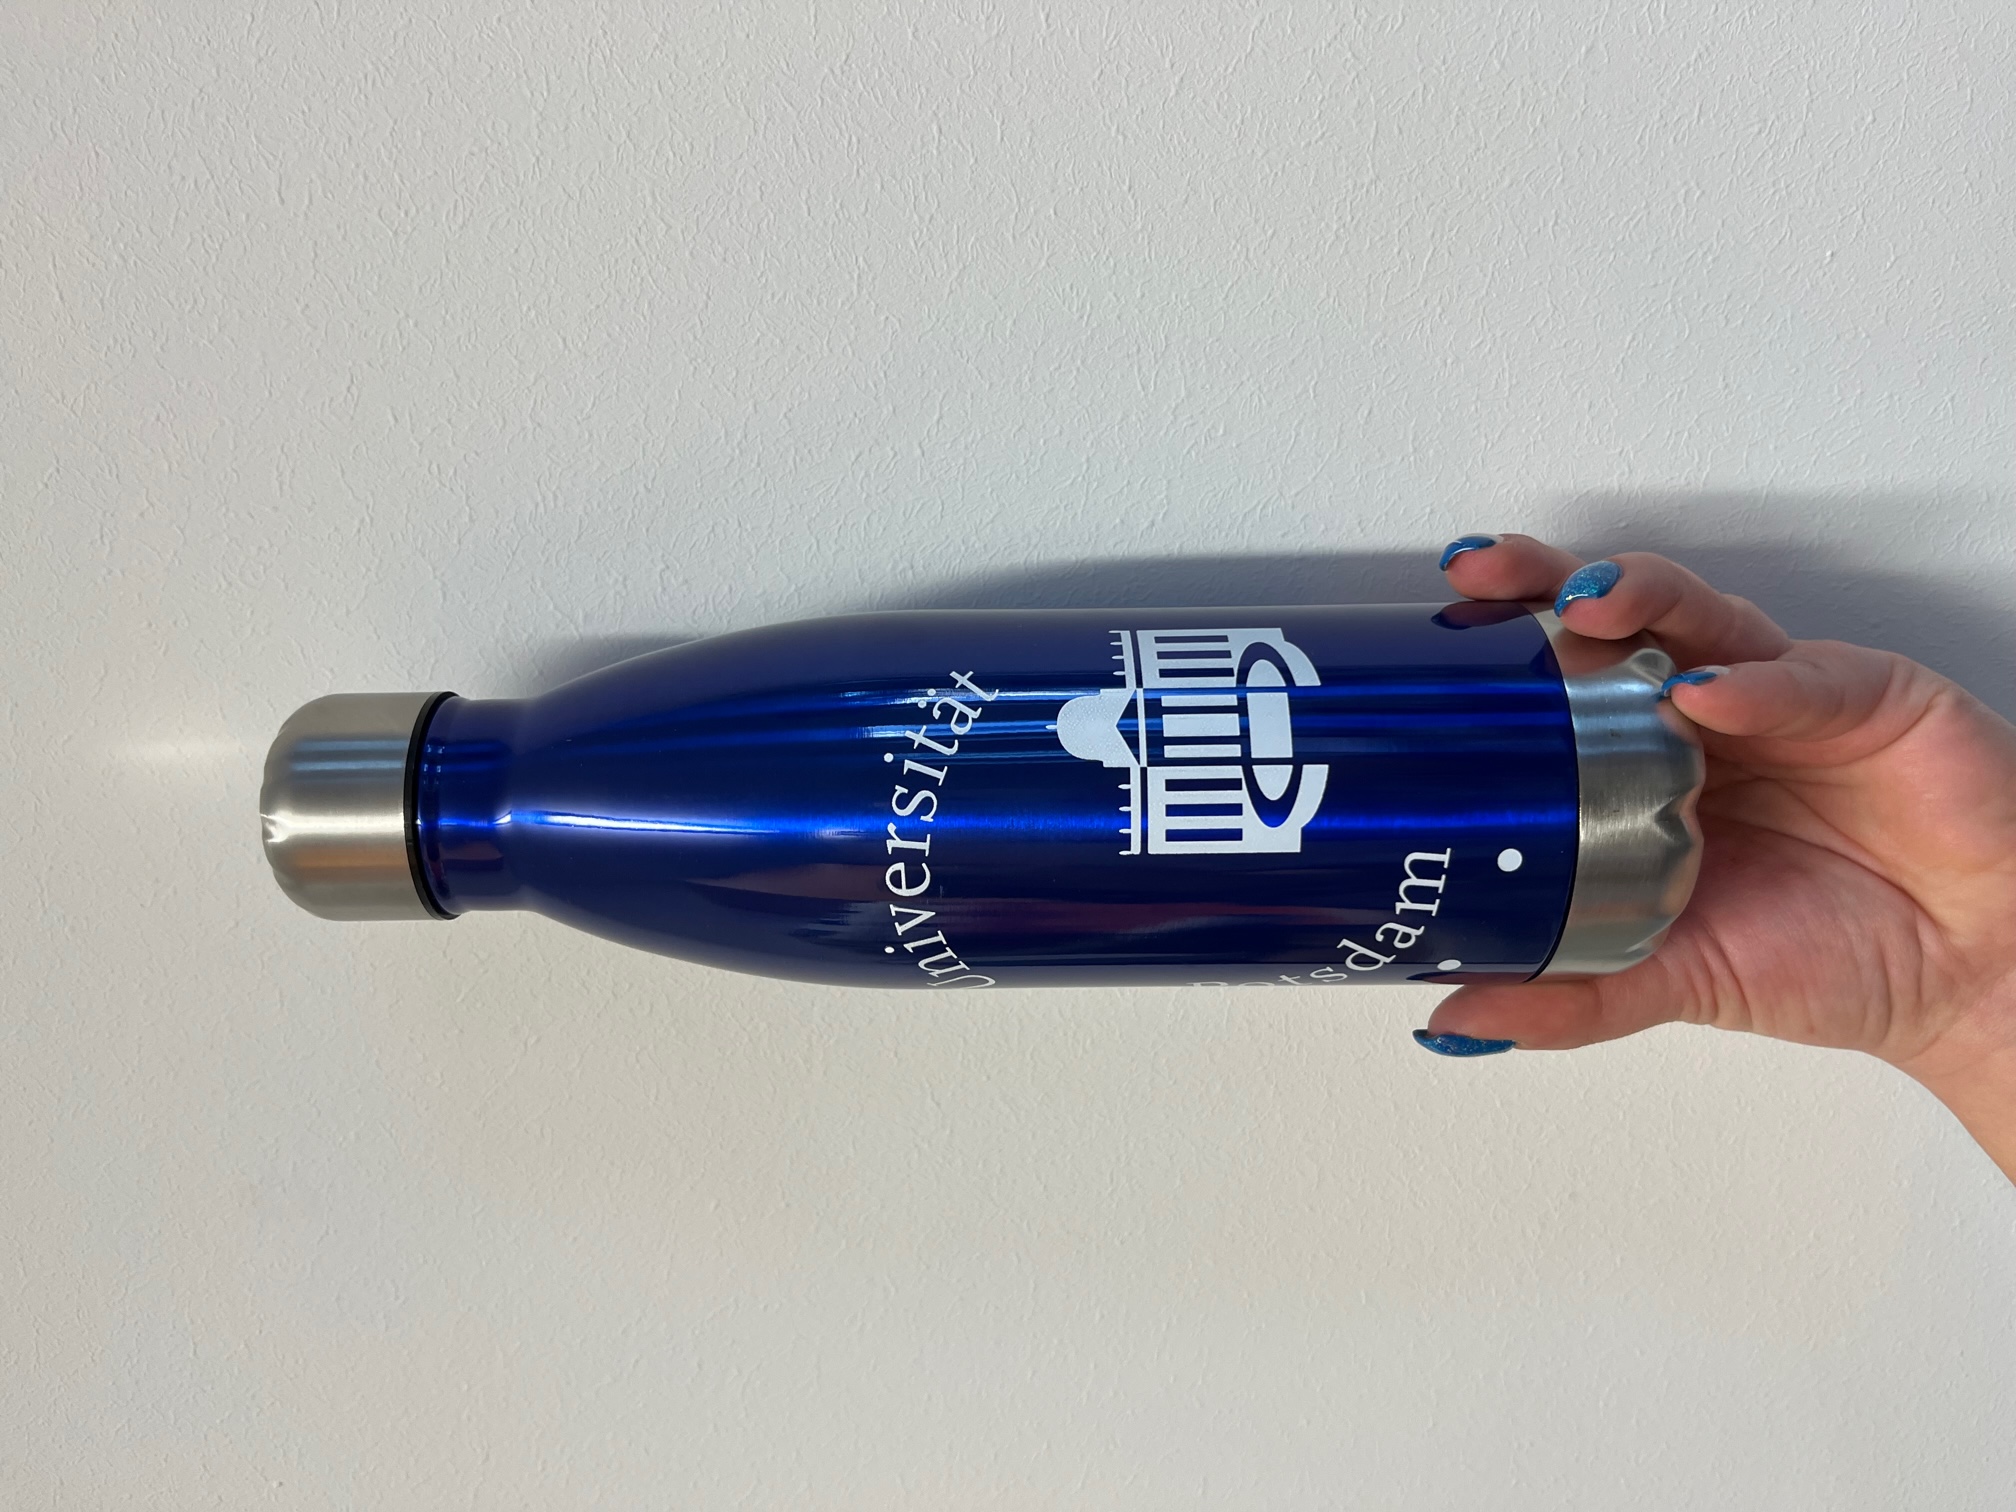 Edelstahlflasche-logo-blau. Abgebildet ist eine blaue Edelstahlflasche mit  groß aufgedrucktem Universitätslogo in der Mitte.